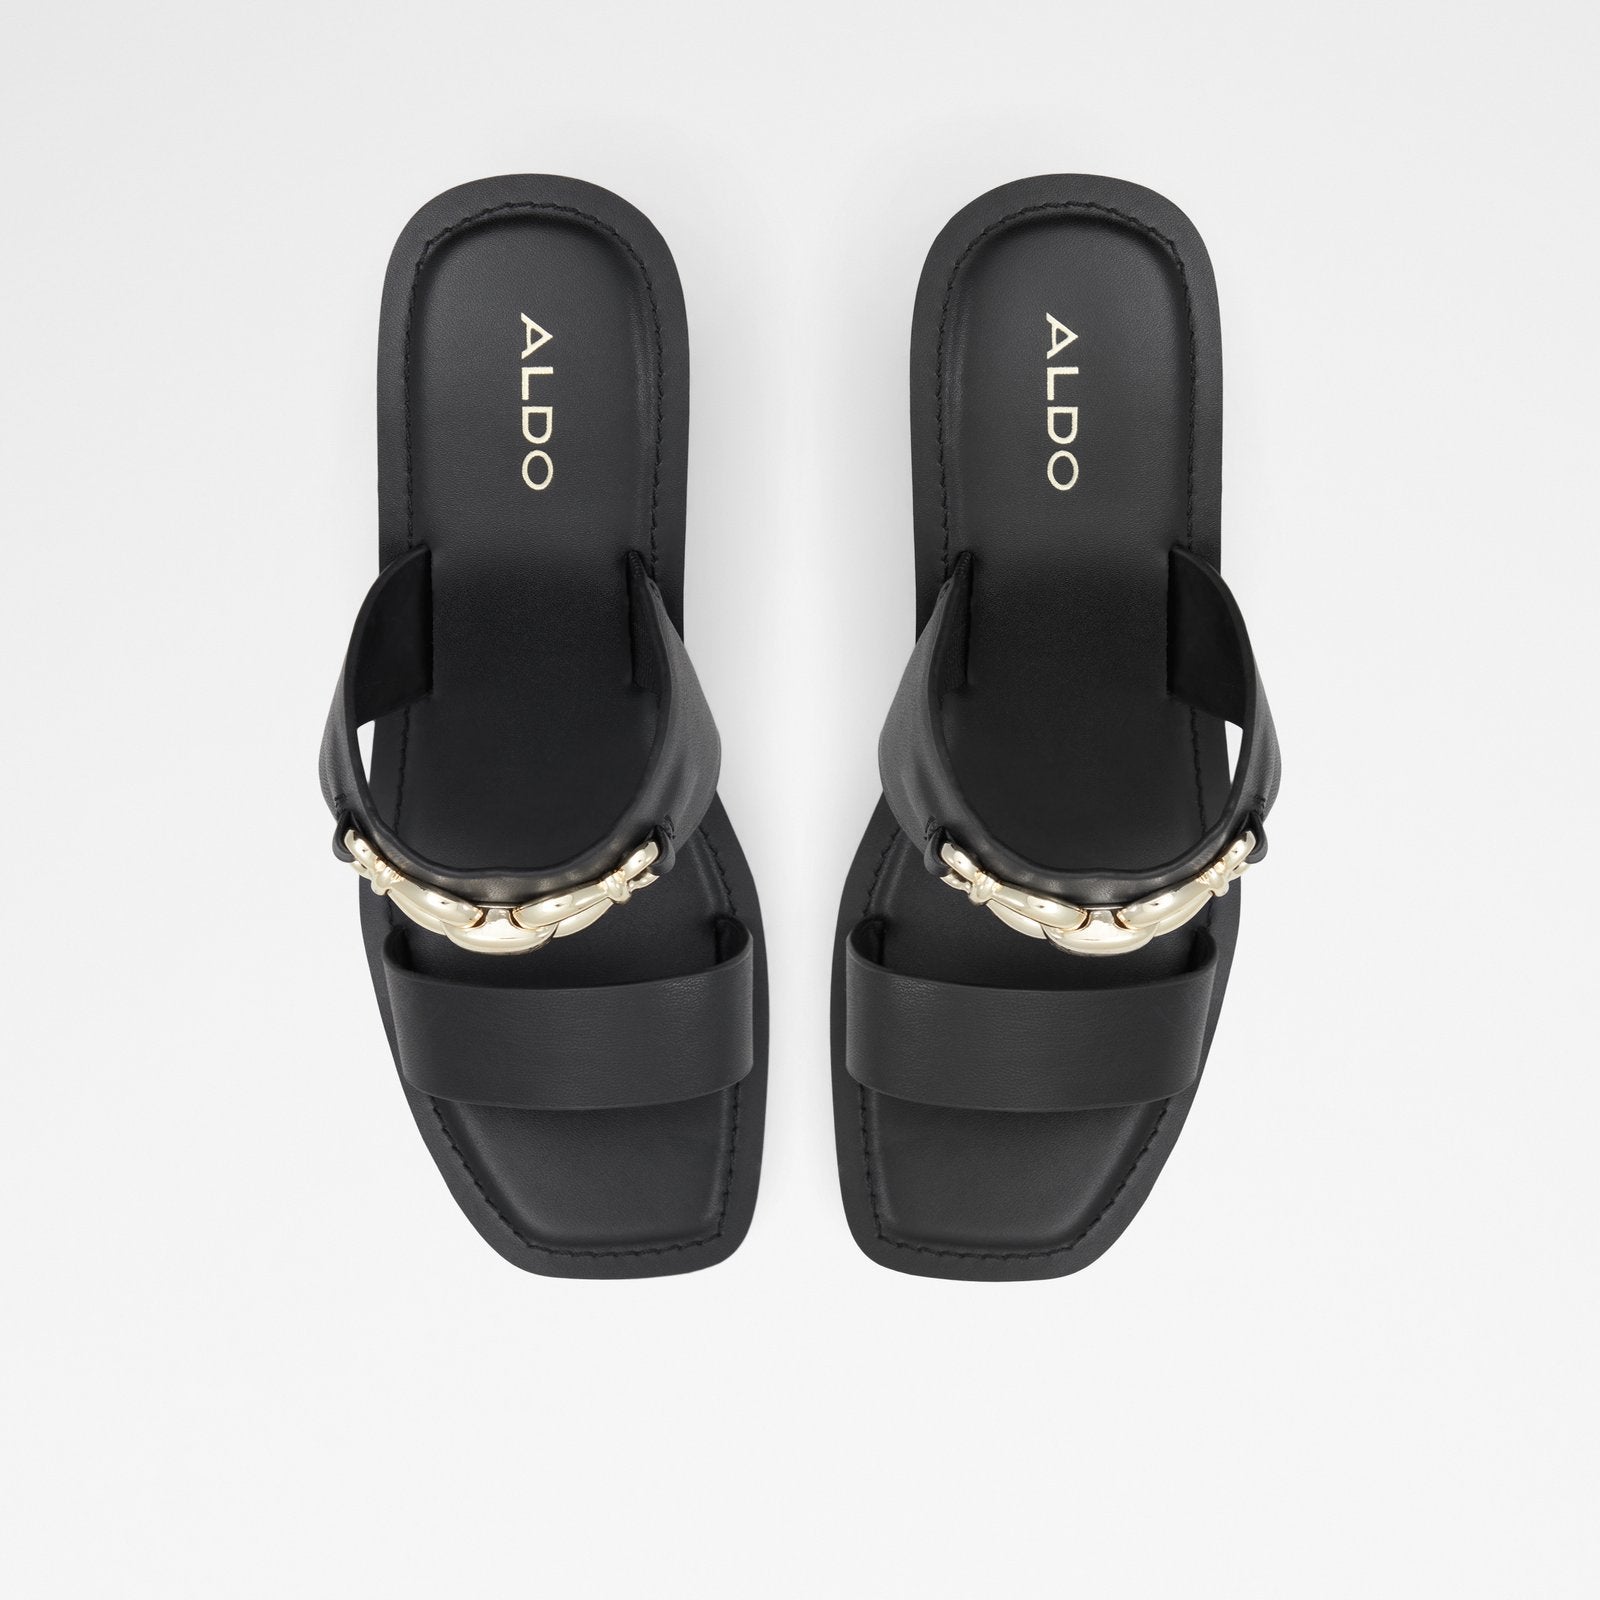 Lavista Women Shoes - Black - ALDO KSA